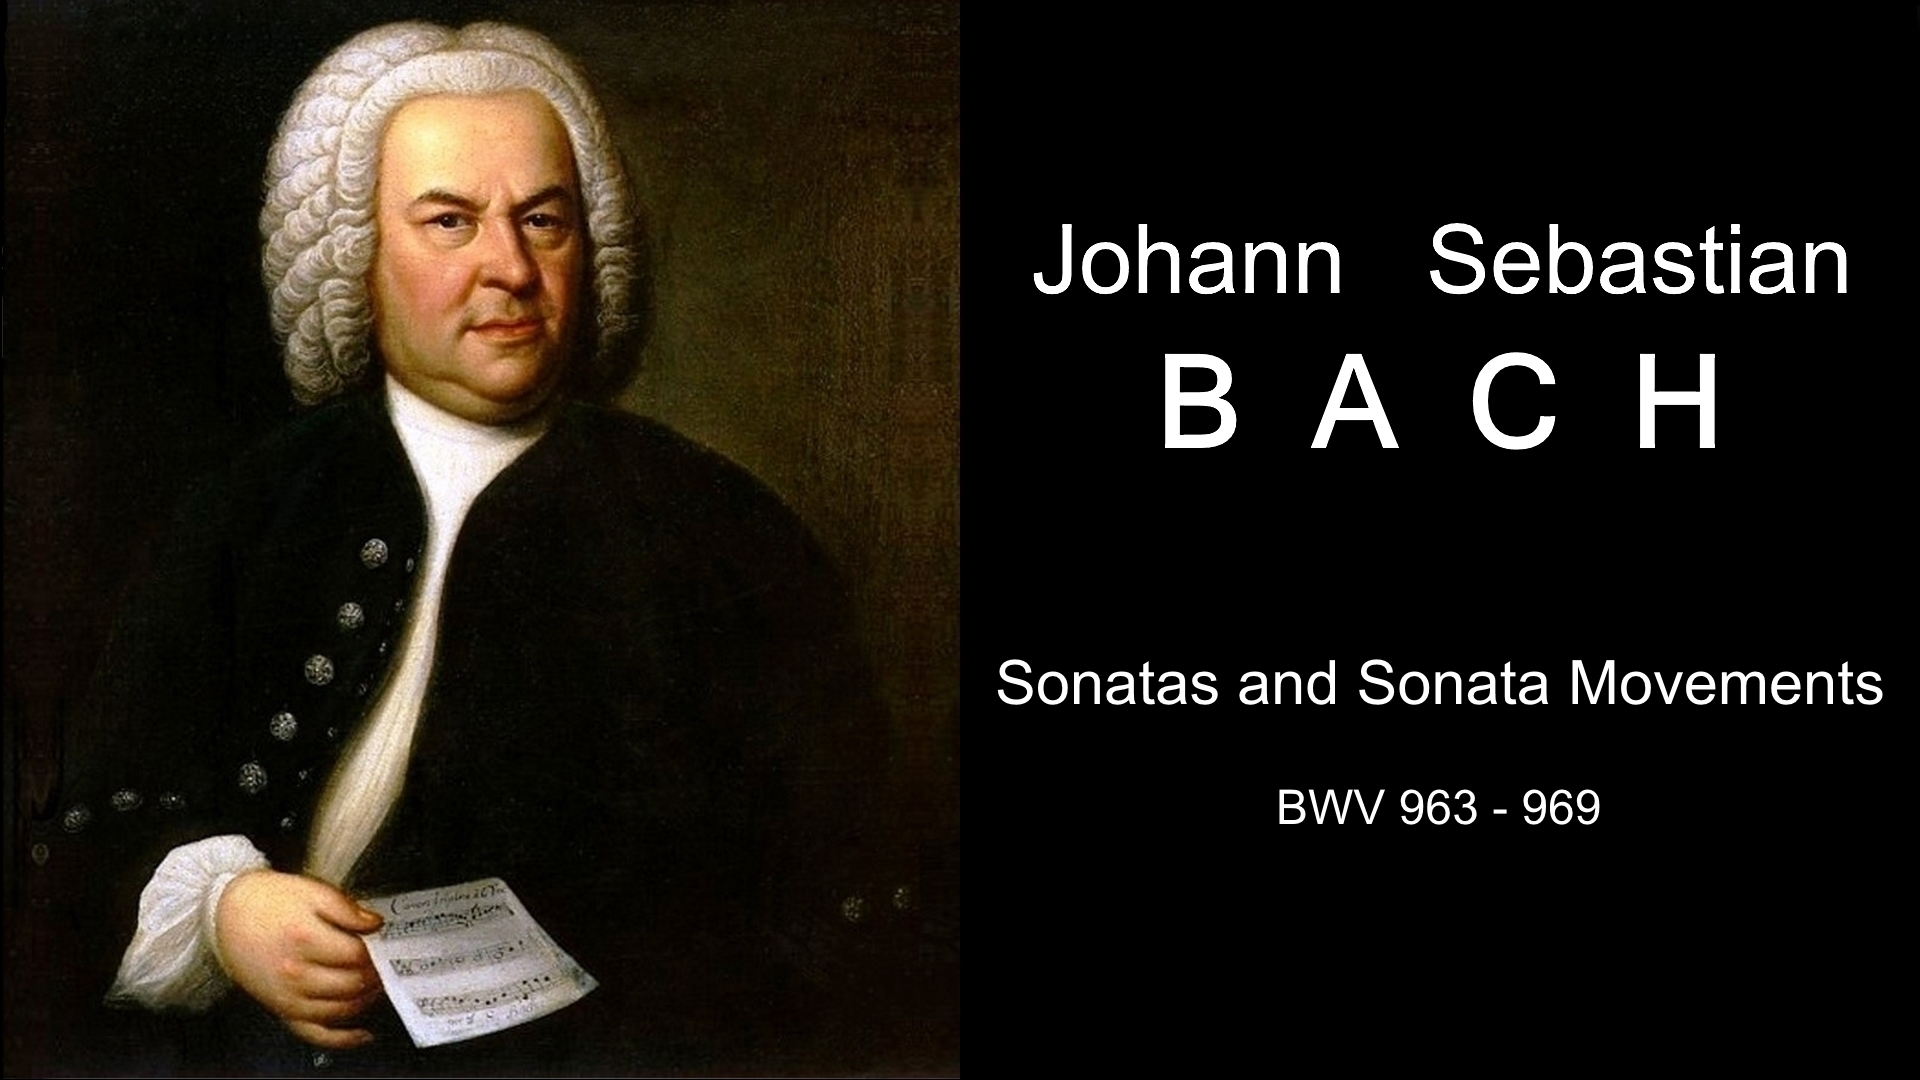 Ис бах. Иоганн Себастьян Бах. Иоганн Себастьян Бах портрет композитора. Иоганн Себастьян Бах (1685-1750). Иоганн Себастьян Бах эпоха Барокко.